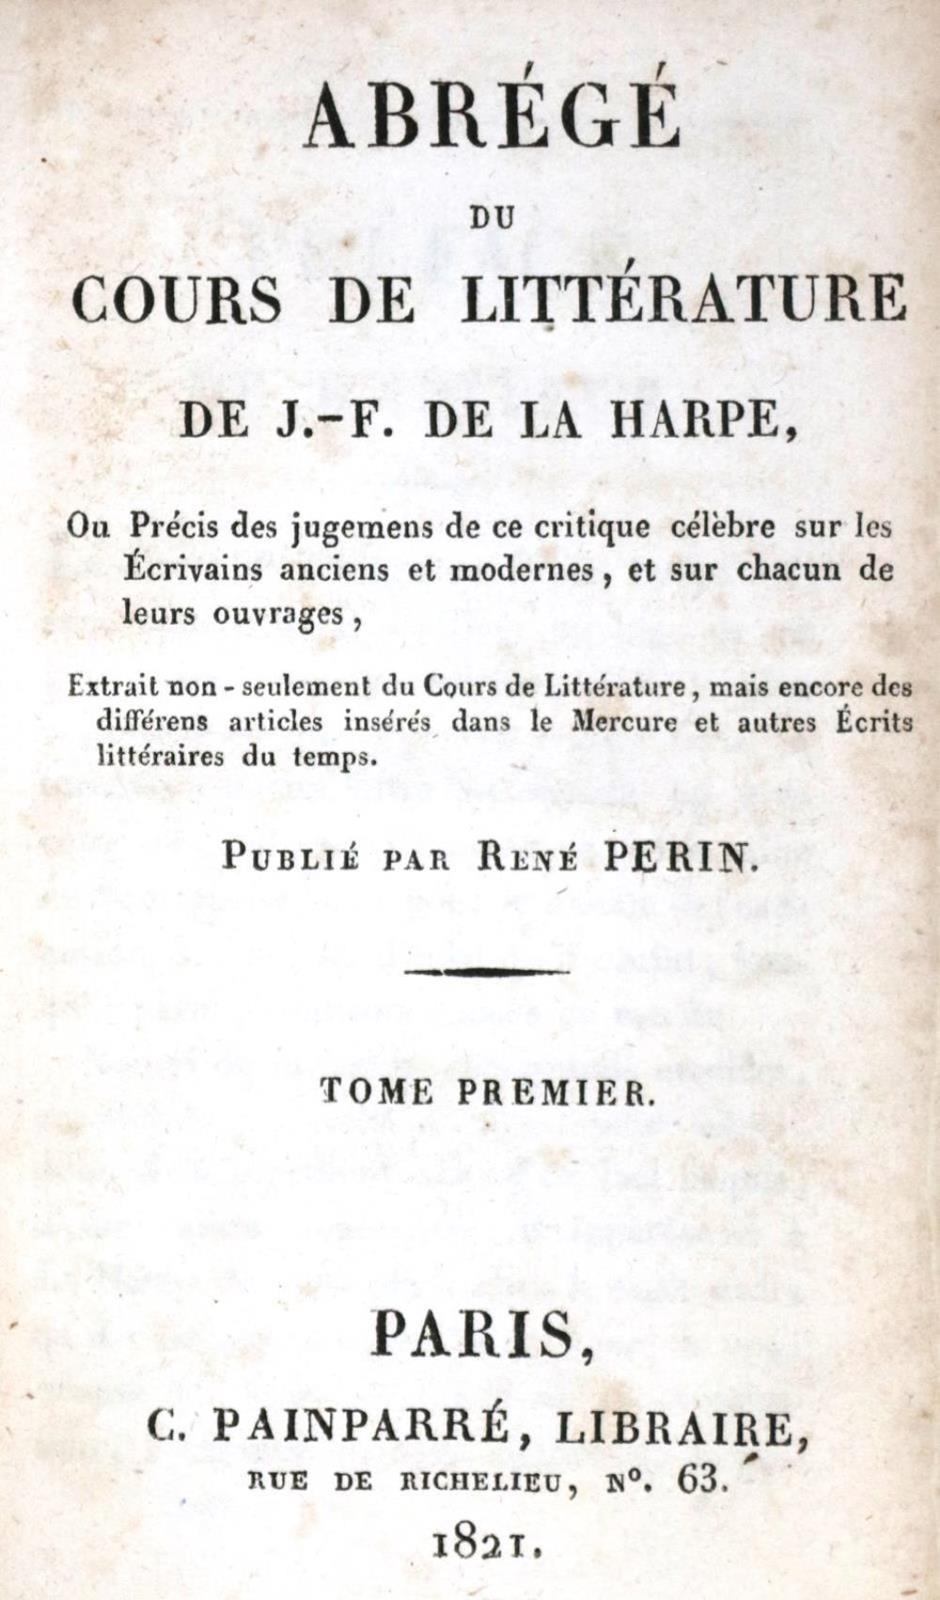 De la Harpe,J.F. u. R.Perin. | Bild Nr.1